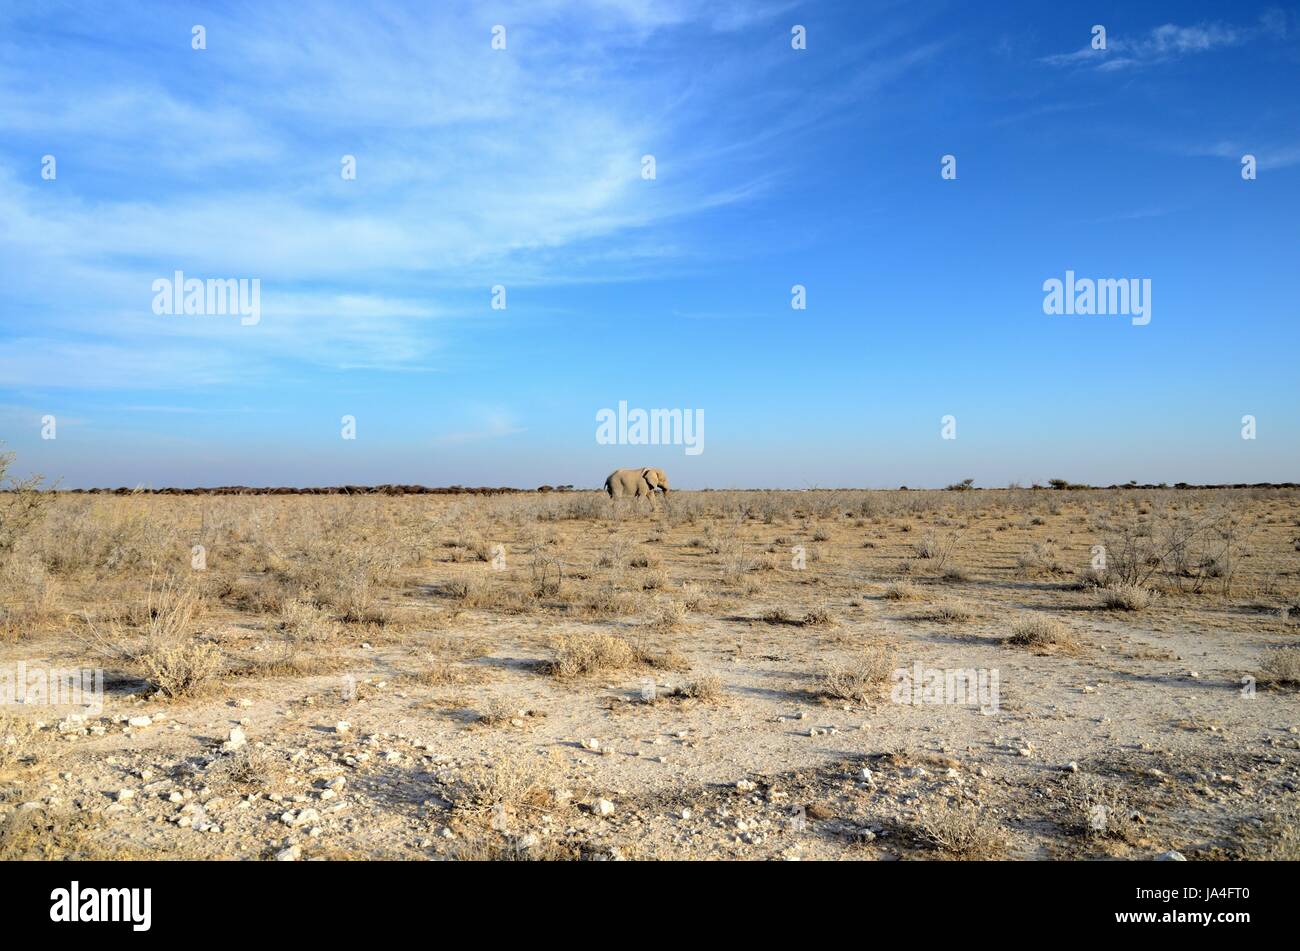 elephant, namibia, winter, animal, africa, elephant, namibia, dryness, heat, Stock Photo